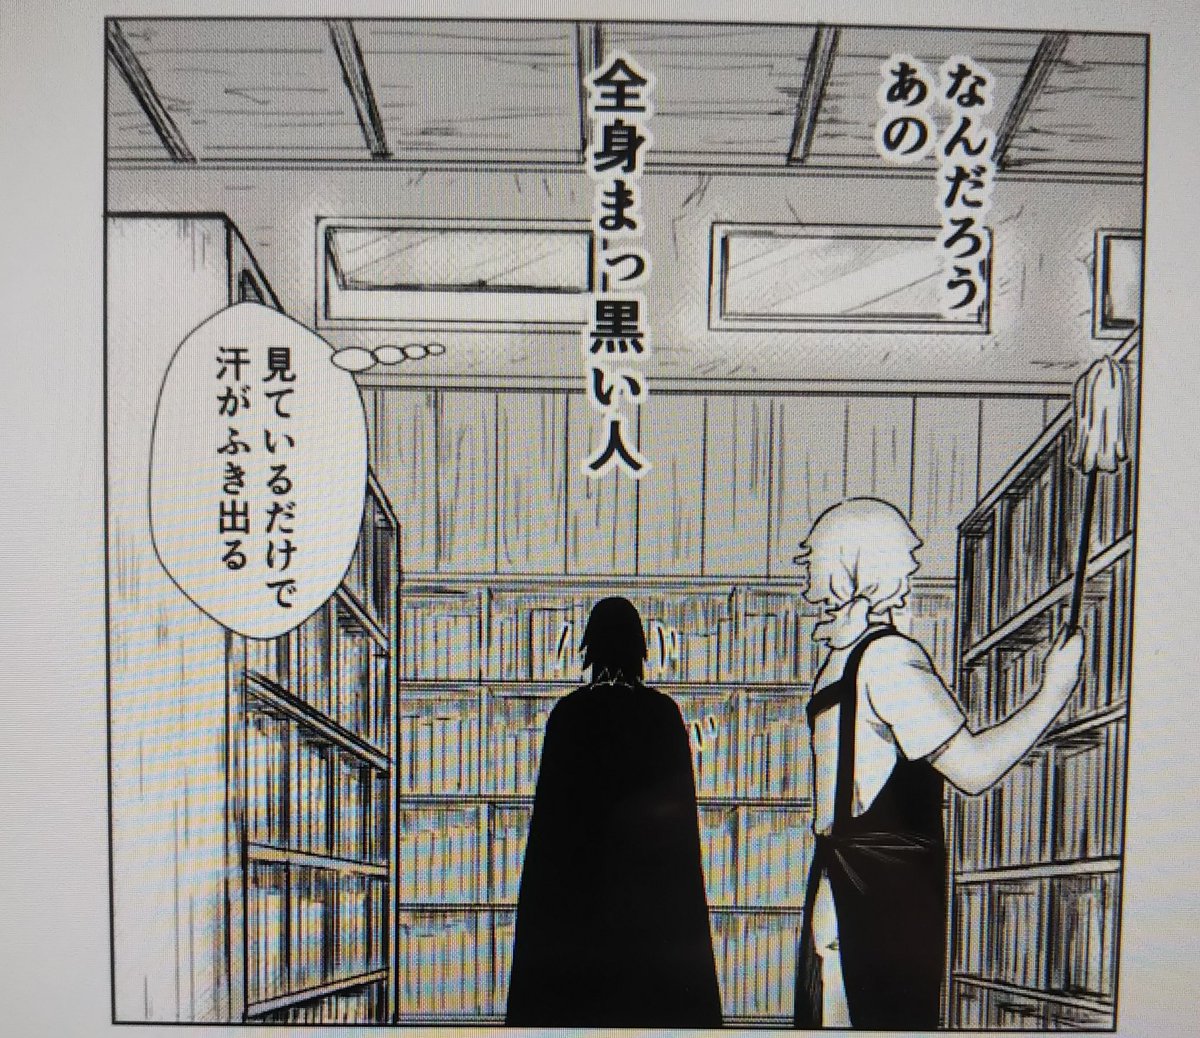 この漫画の左右の本棚が不自然なのは描いてる時からわかってたのだけど(特に向かって右の本棚)、パースをずらしてみればよかったのかとRT 